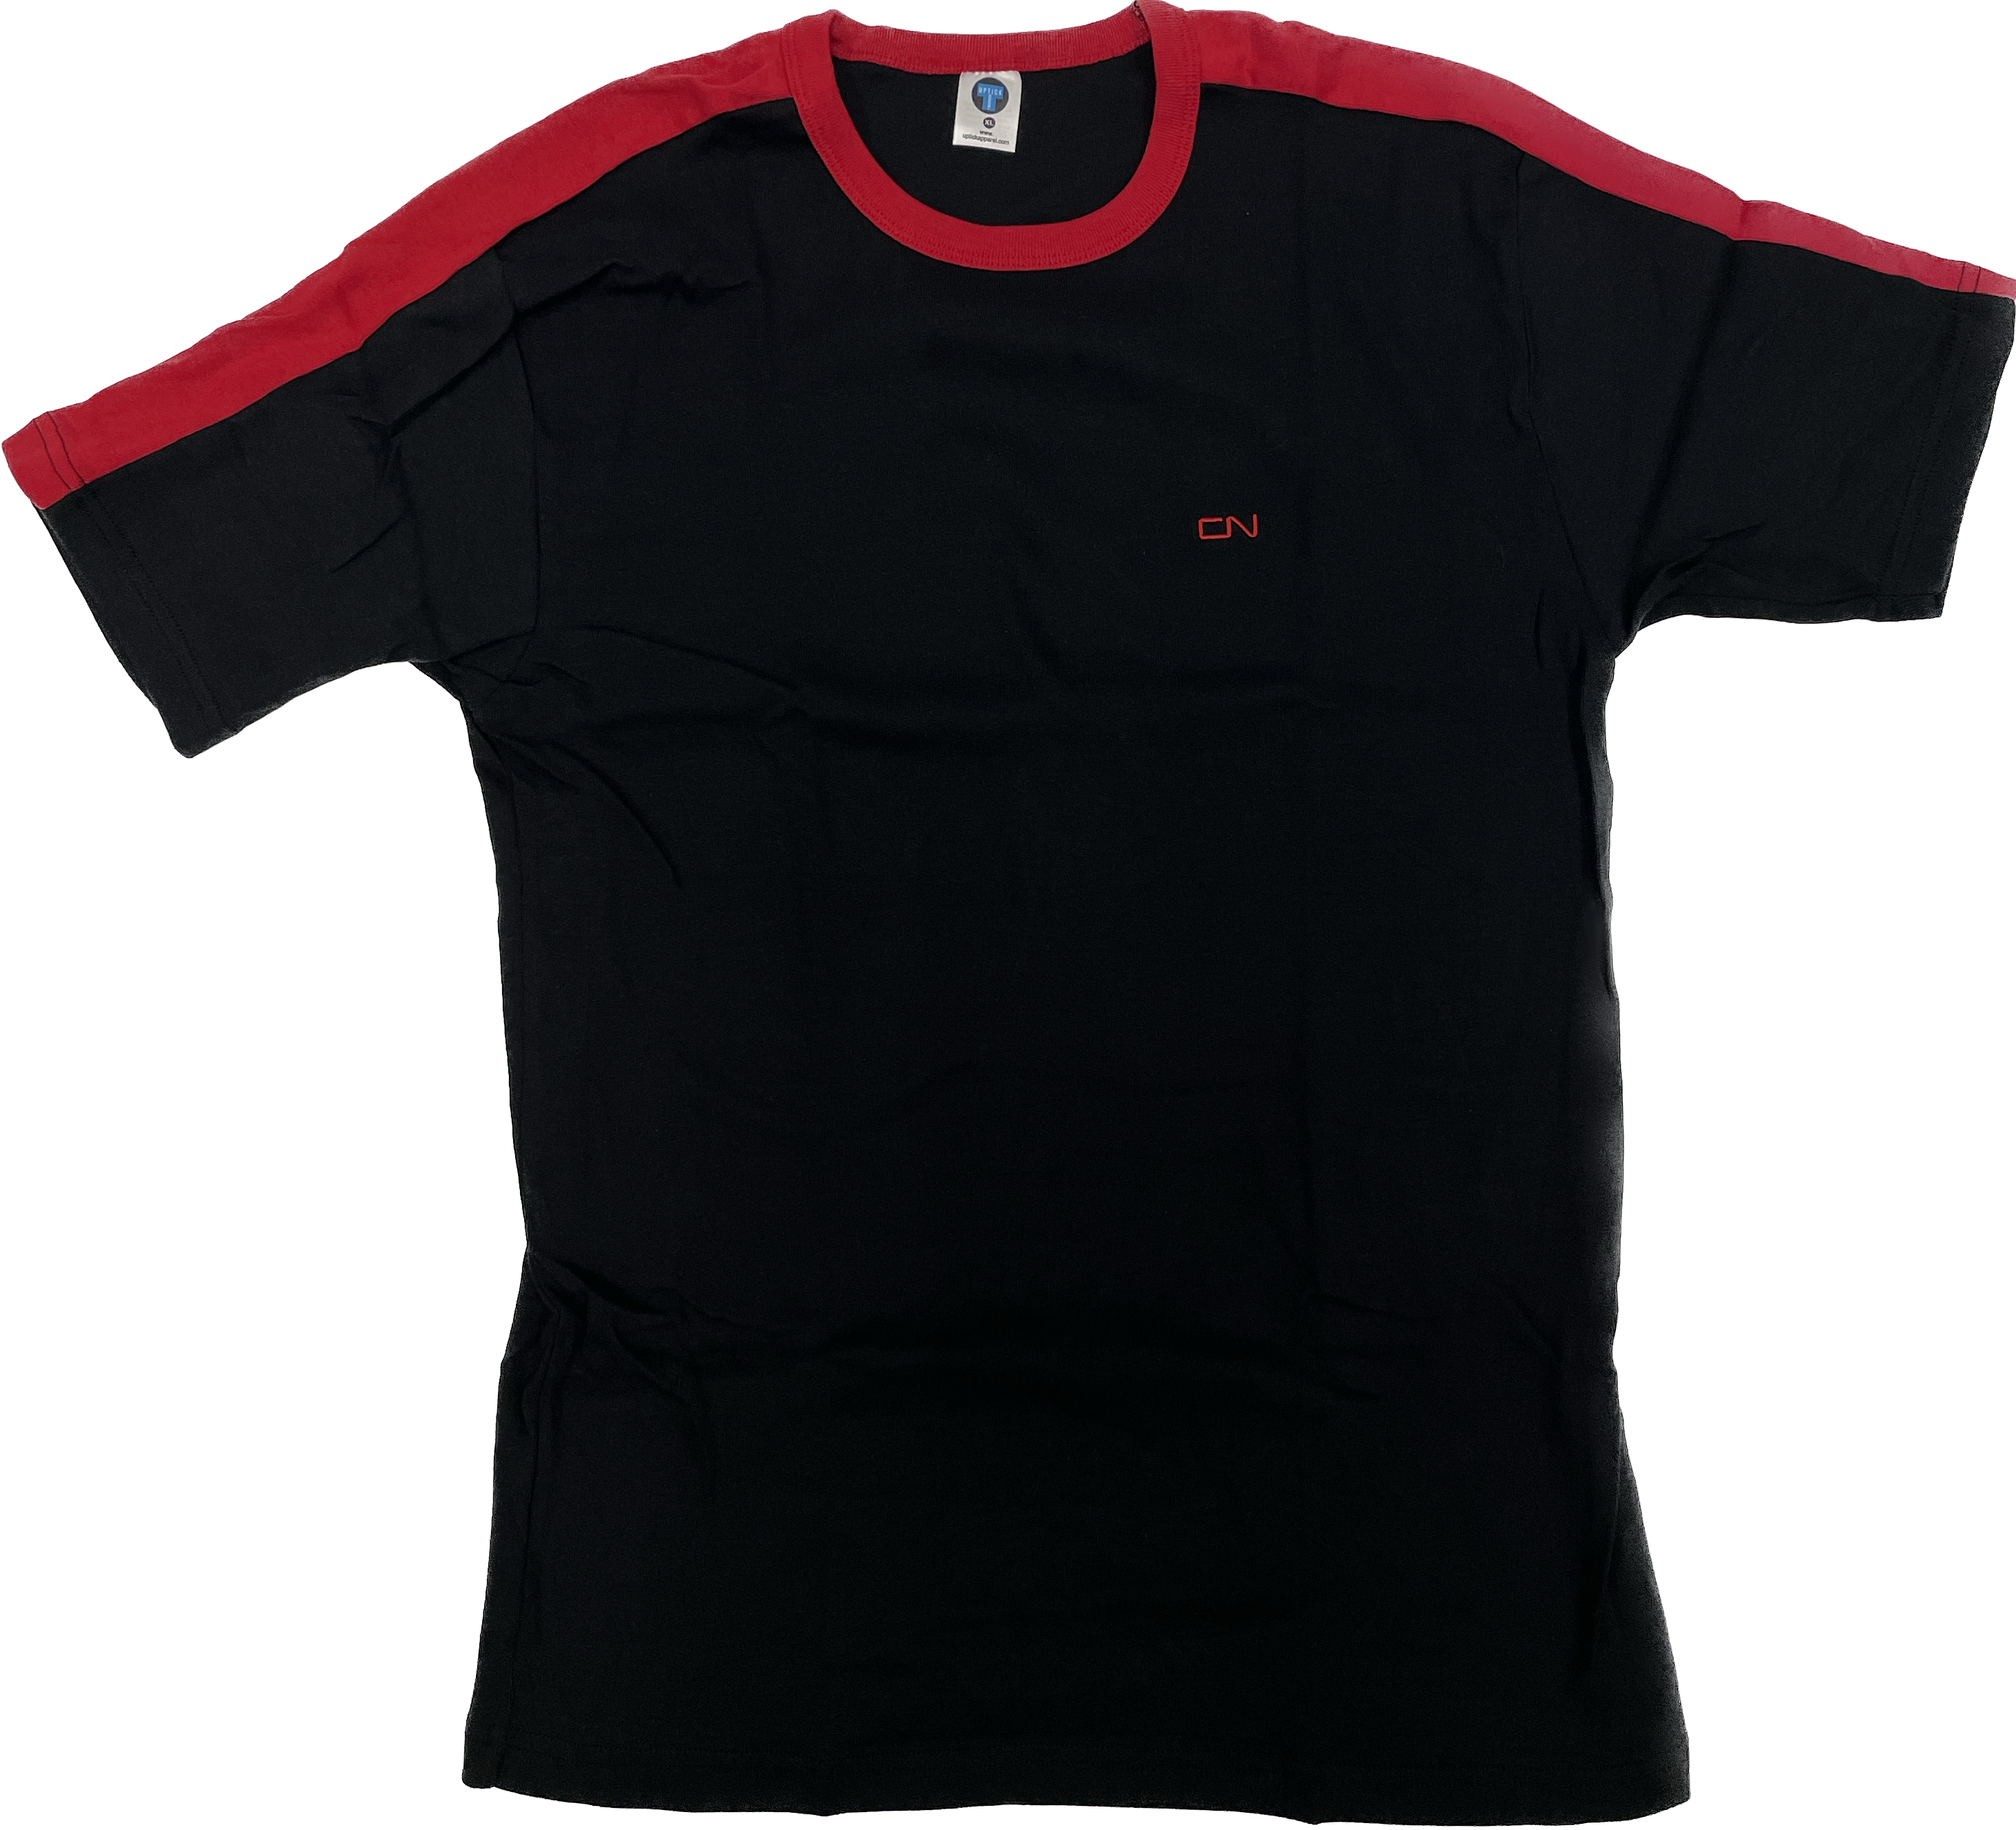 T-shirt noir et rouge avec logo CN